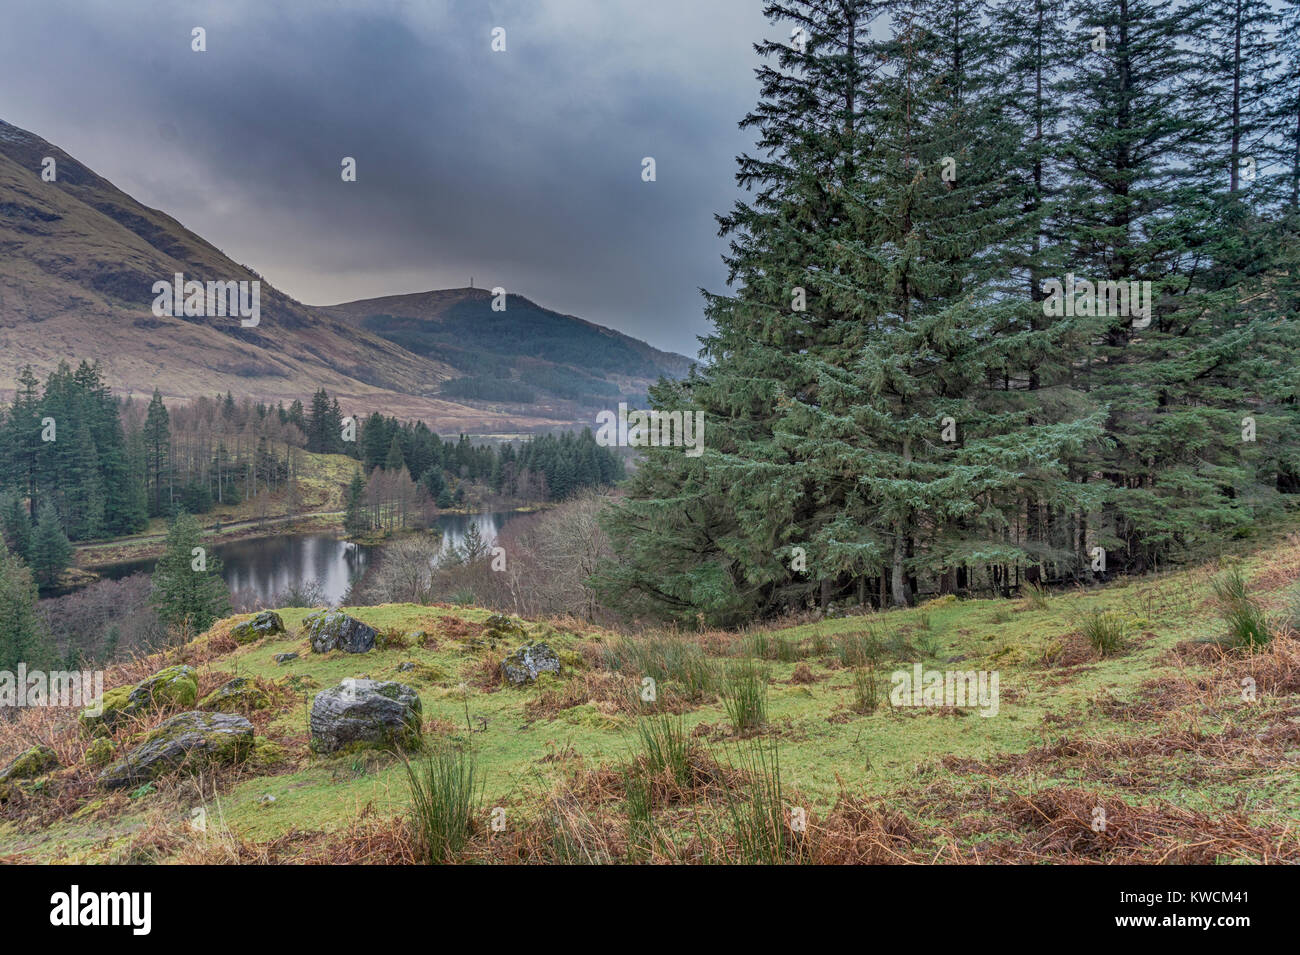 Overlooking Torren Lochan from the lower slopes of Sgorr nam Fiannaidh in Glen Coe. Stock Photo